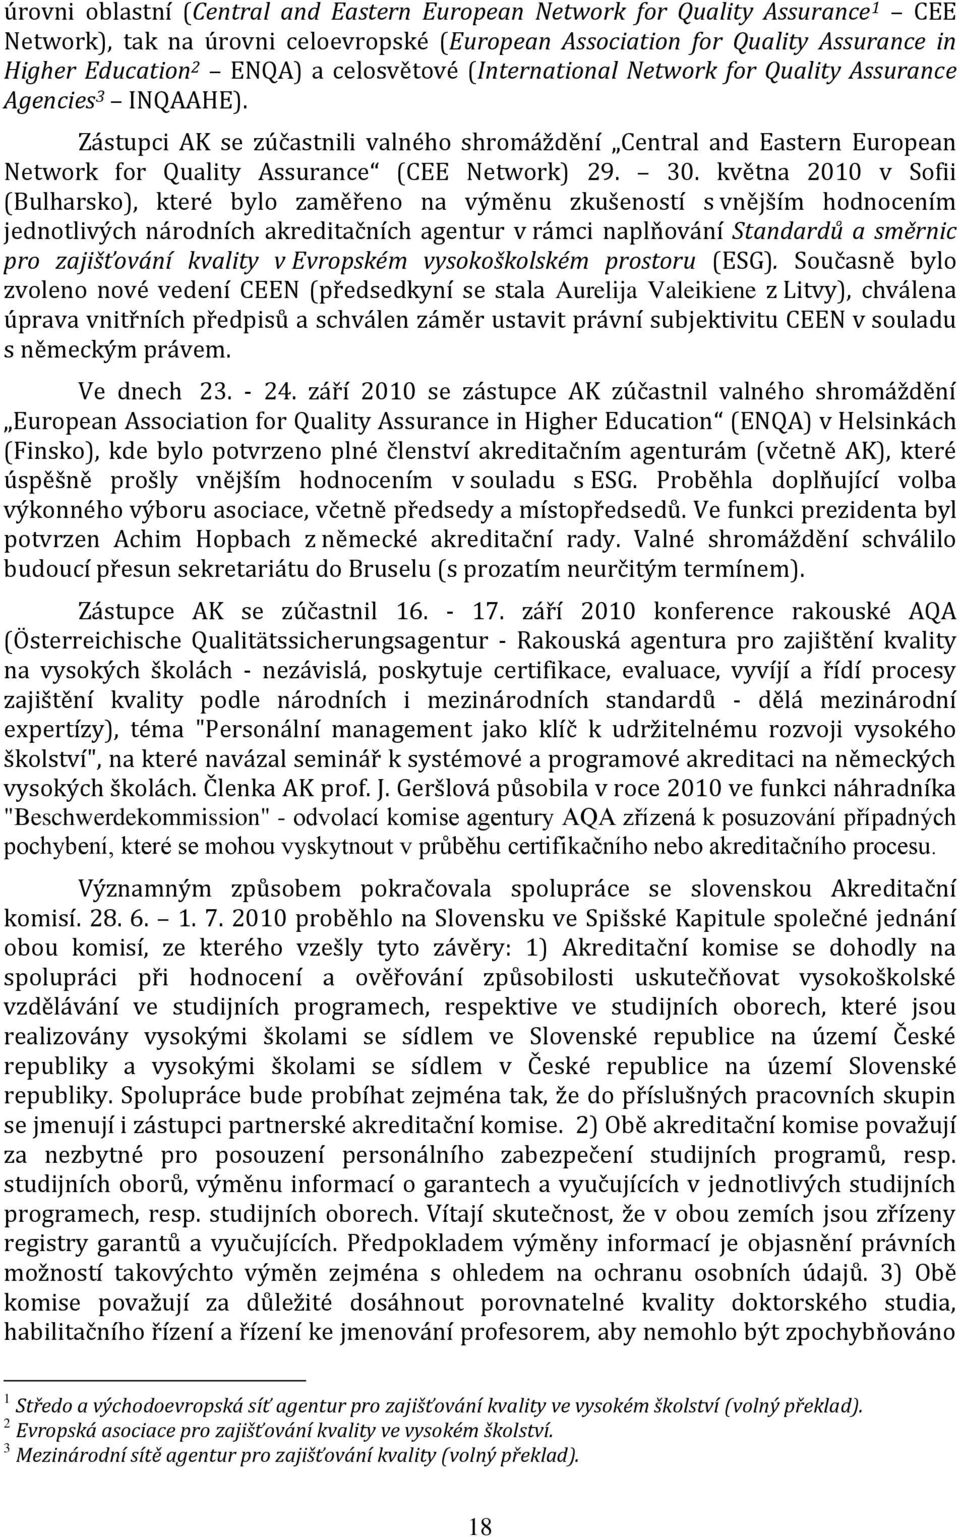 30. května 2010 v Sofii (Bulharsko), které bylo zaměřeno na výměnu zkušeností s vnějším hodnocením jednotlivých národních akreditačních agentur v rámci naplňování Standardů a směrnic pro zajišťování